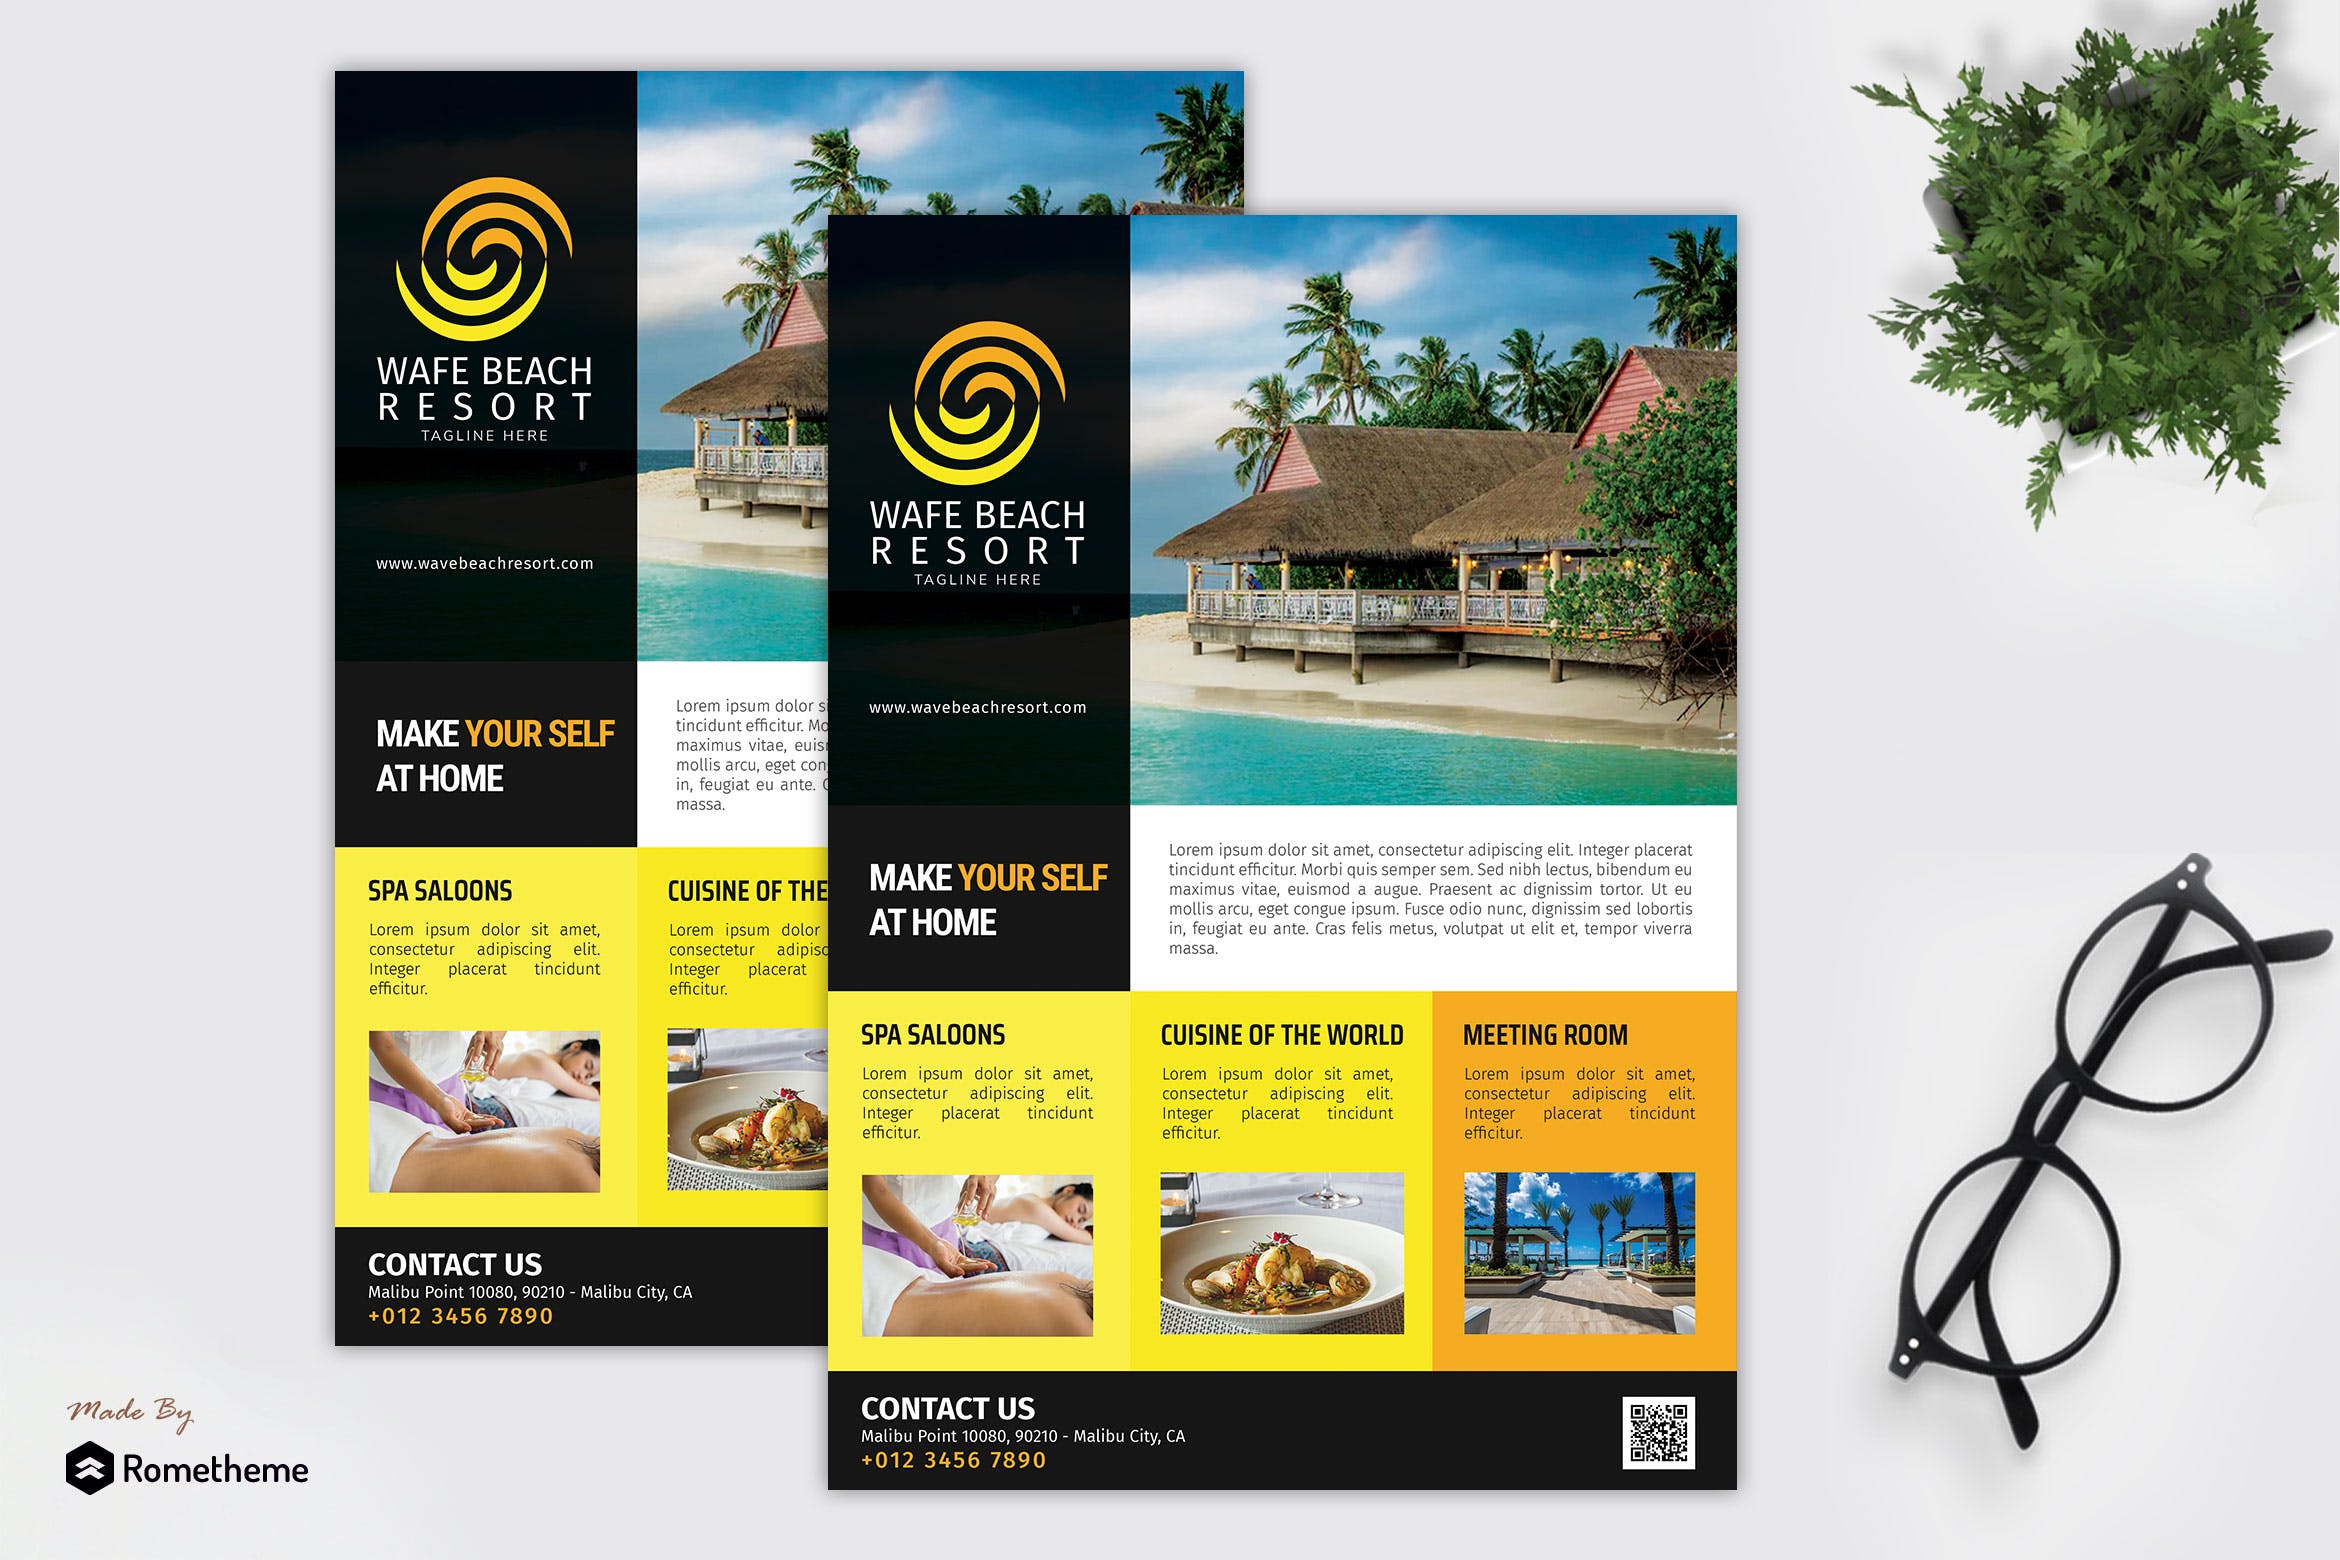 海岛度假村宣传单版式设计模板 Wave Beach Resort – Promotion Flyer RB插图